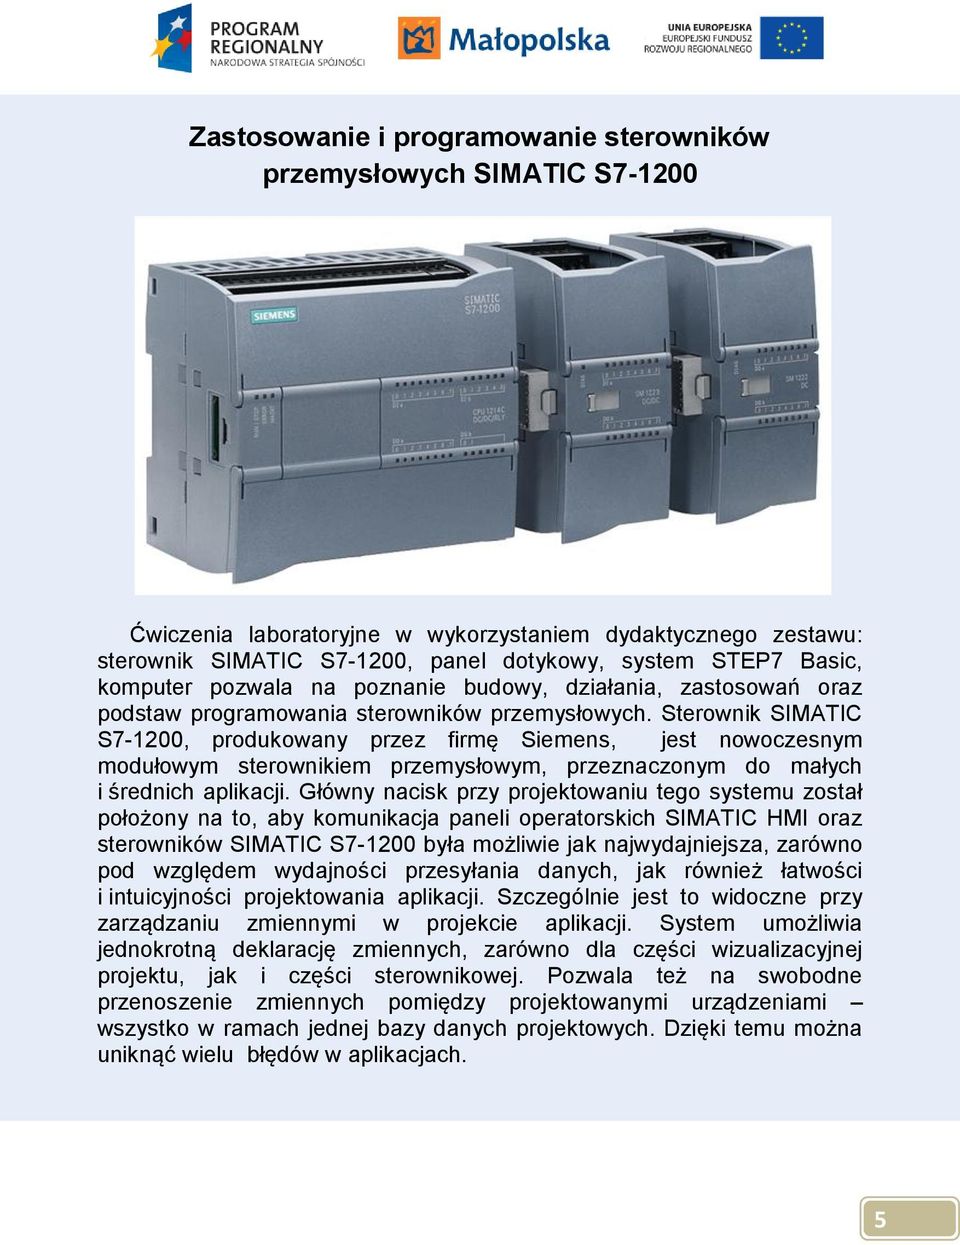 Sterownik SIMATIC S7-1200, produkowany przez firmę Siemens, jest nowoczesnym modułowym sterownikiem przemysłowym, przeznaczonym do małych i średnich aplikacji.